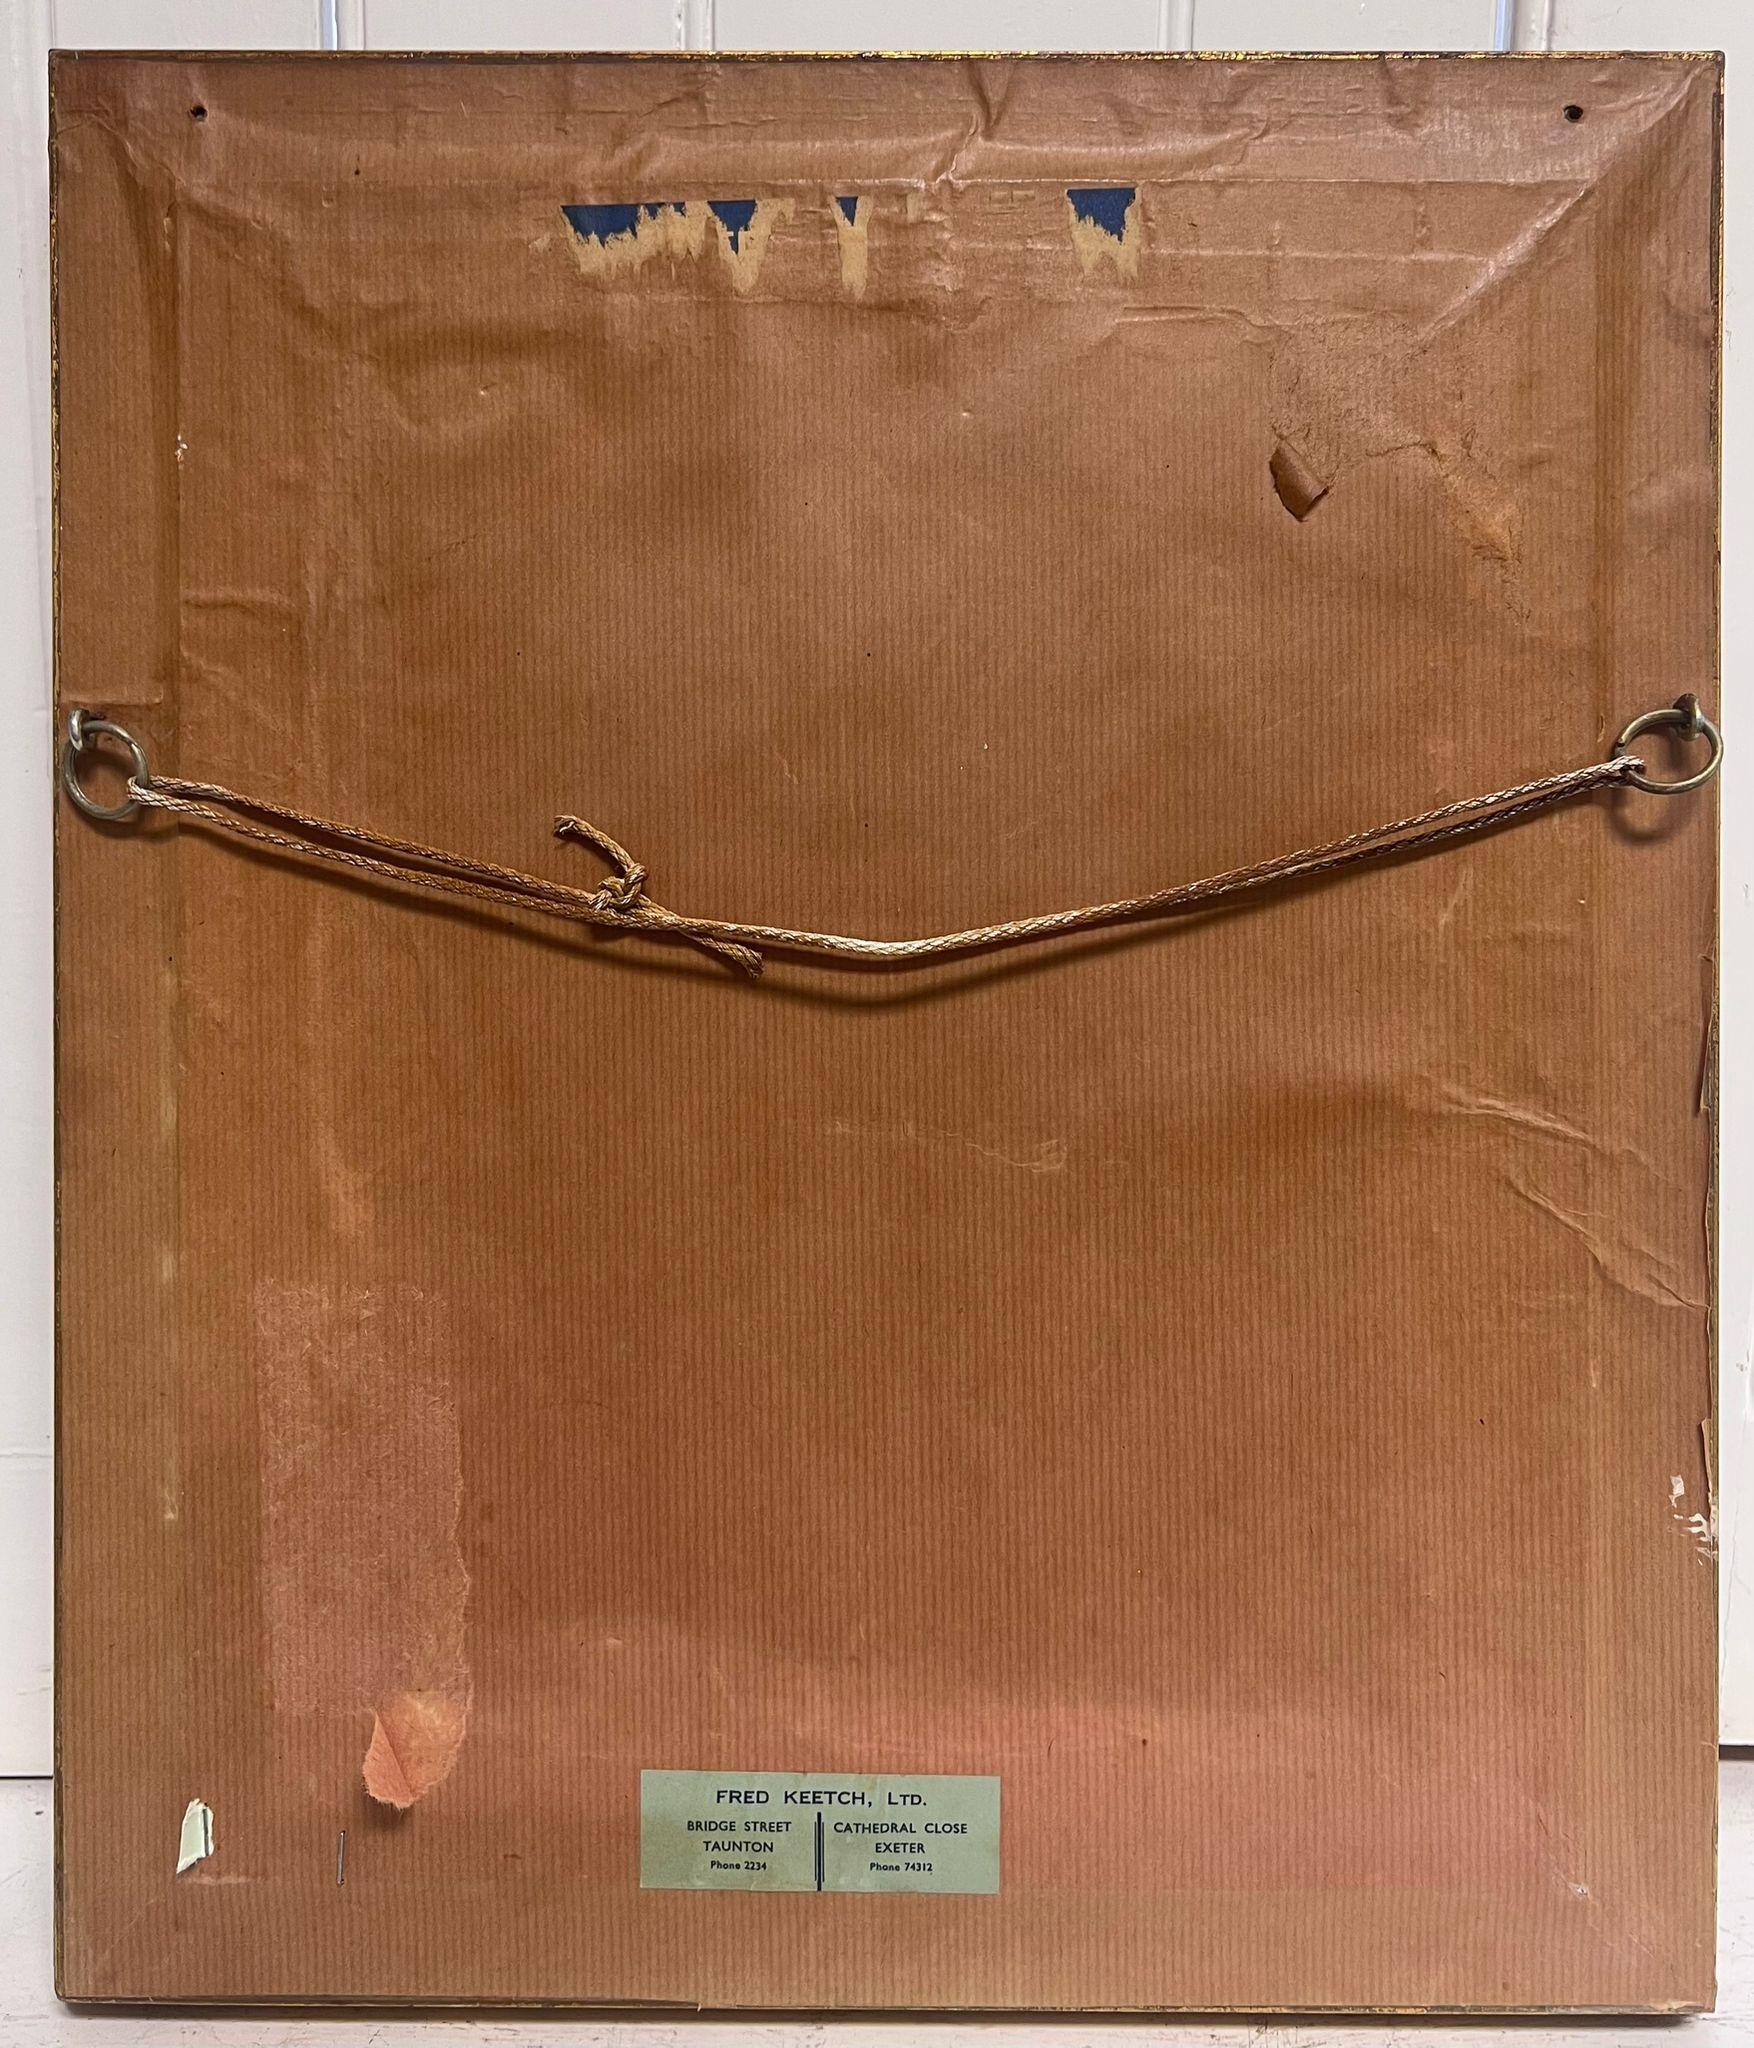 Fritz Muller (1913 - 1972)
Ölgemälde auf Karton, gerahmt
unterzeichnet
Gerahmt: 17 x 14,5 Zoll
Brett: 14 x 12 Zoll
Provenienz: Privatsammlung, England
Zustand: sehr guter und gesunder Zustand